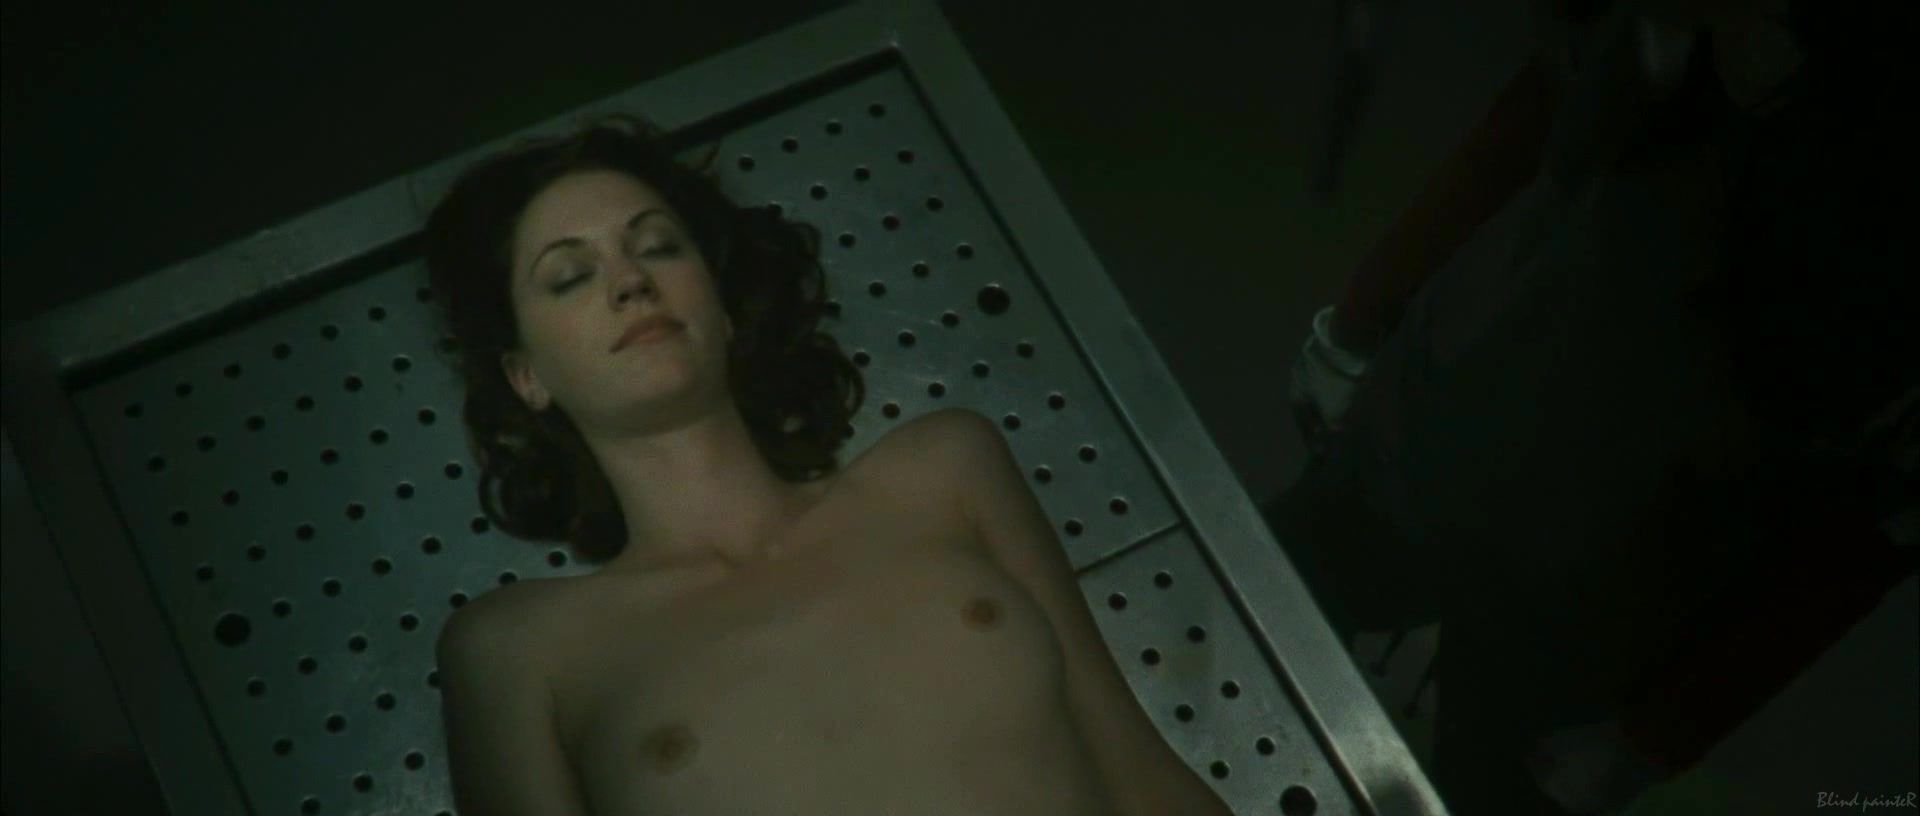 Teen Porn Lauren Lee Smith nude - Pathology (2008) Wet Cunts - 2